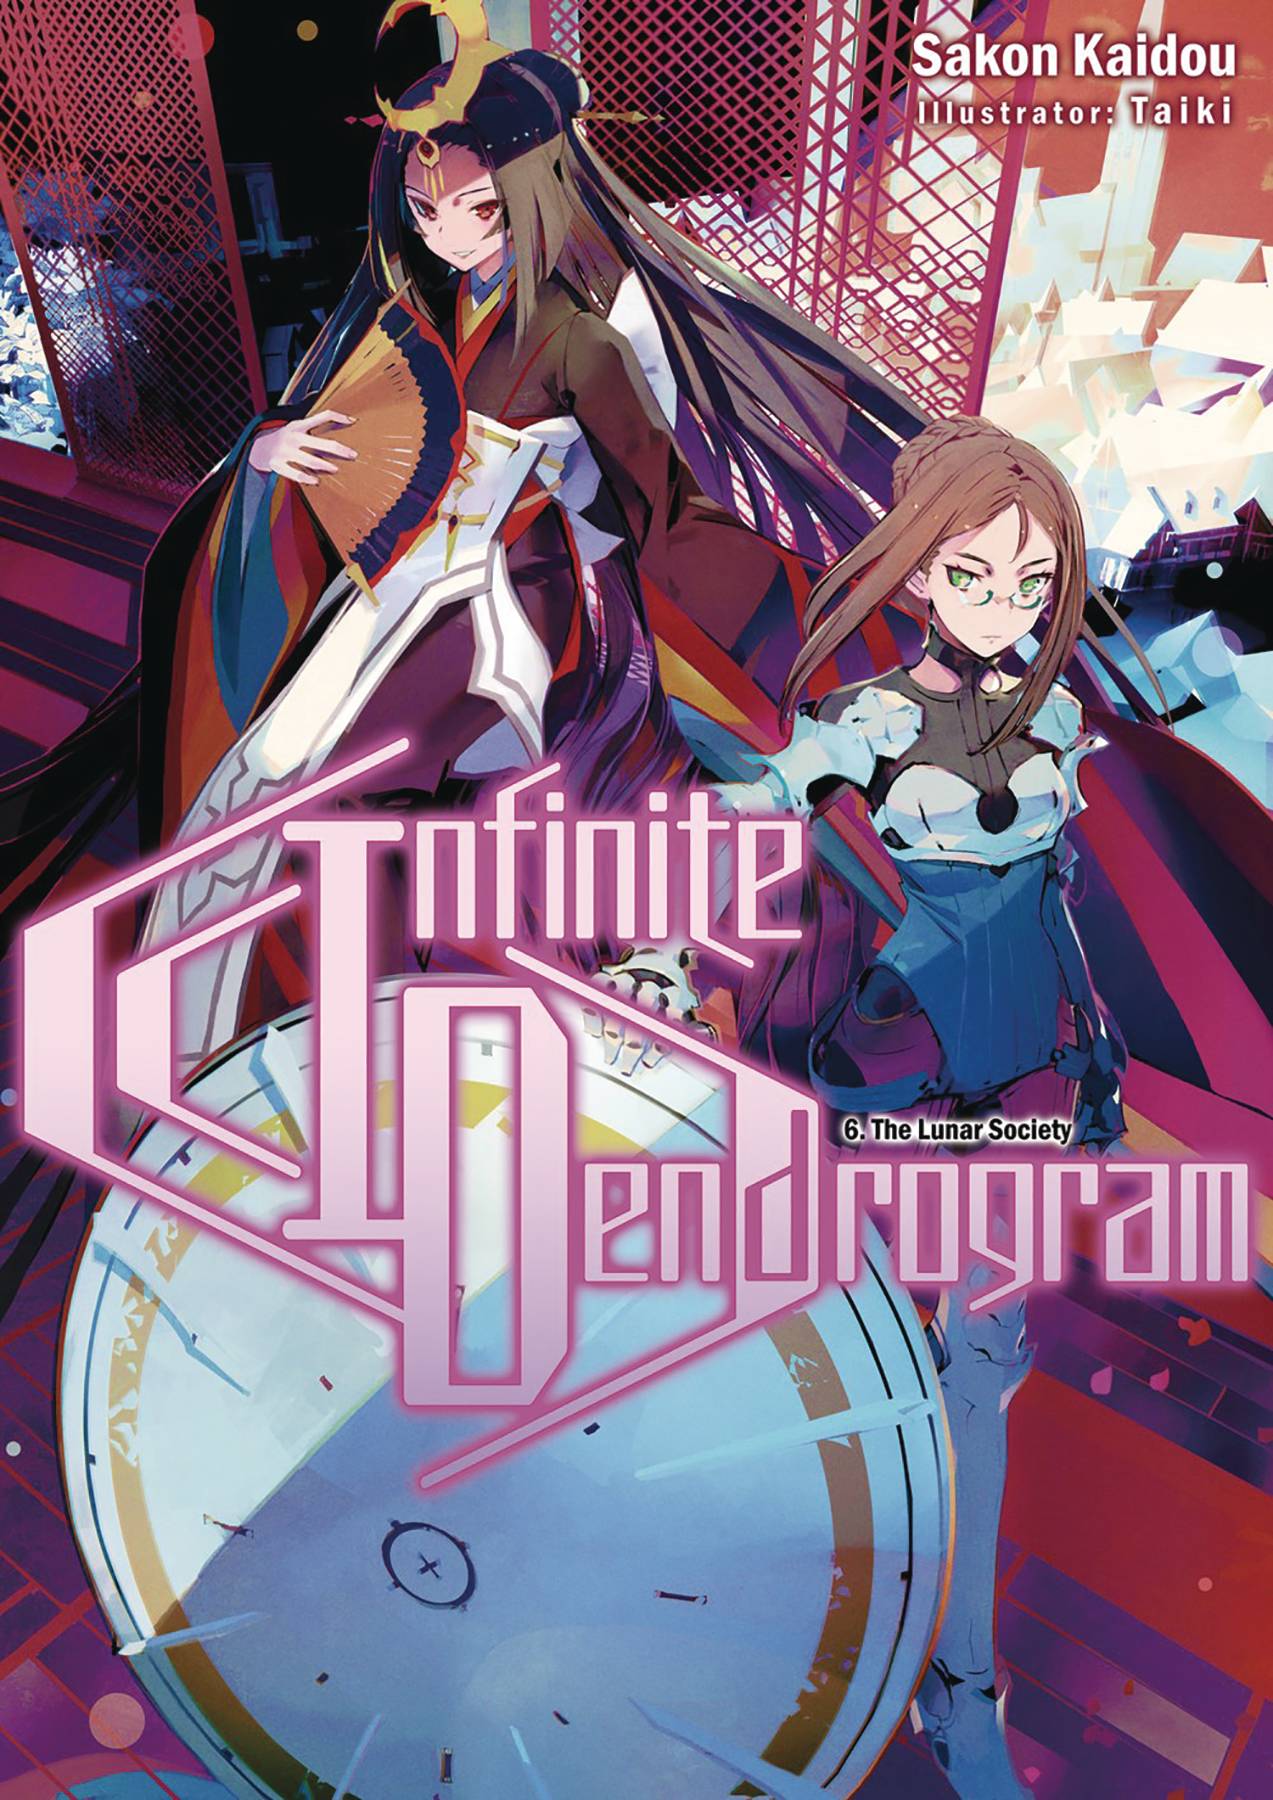 Infinite Dendrogram light novel illustration.